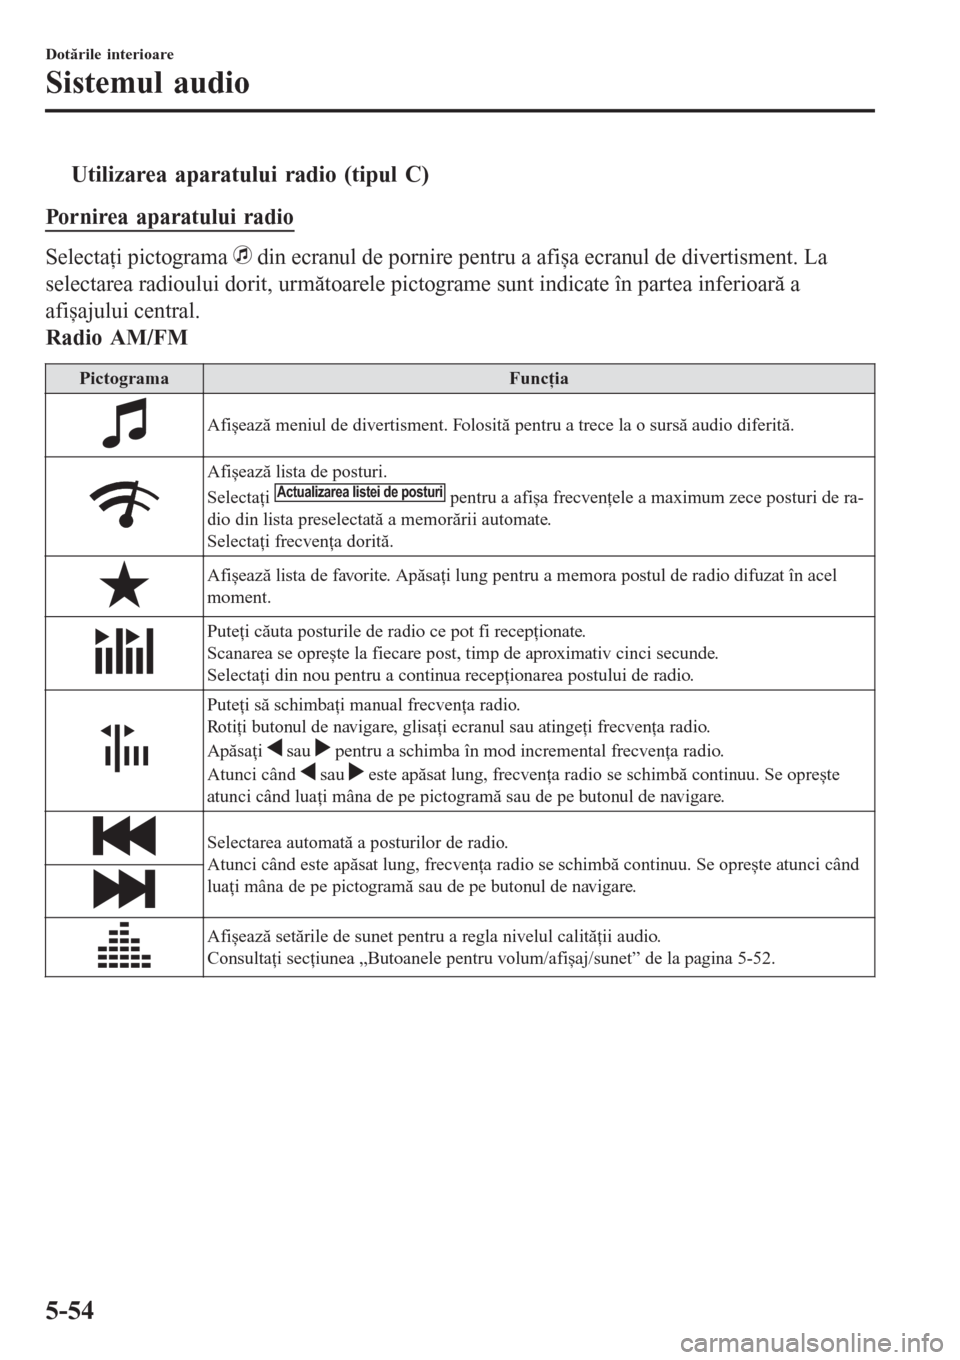 MAZDA MODEL 3 HATCHBACK 2015  Manualul de utilizare (in Romanian) tUtilizarea aparatului radio (tipul C)
Pornirea aparatului radio
Selectaţi pictograma  din ecranul de pornire pentru a afișa ecranul de divertisment. La
selectarea radioului dorit, următoarele pict